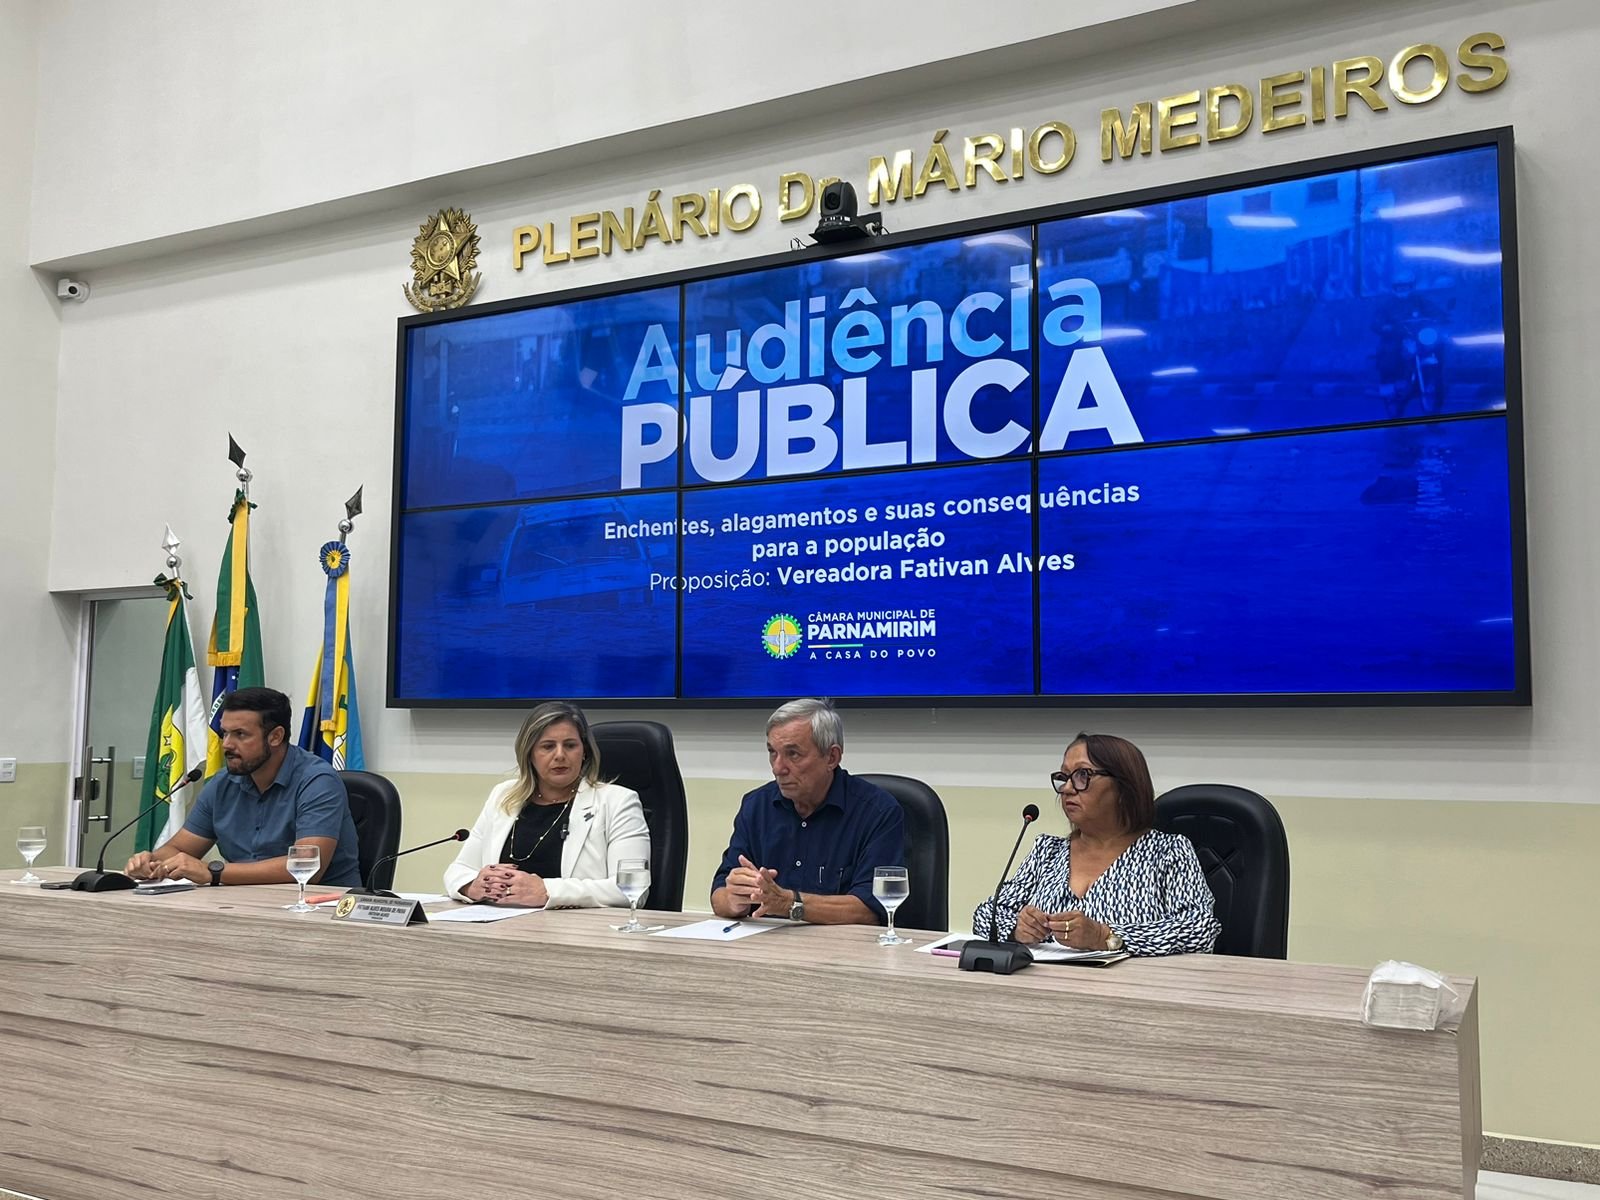 Mandato da vereadora Fativan Alves realiza Audiência Pública para discutir os alagamentos/enchentes no município de Parnamirim